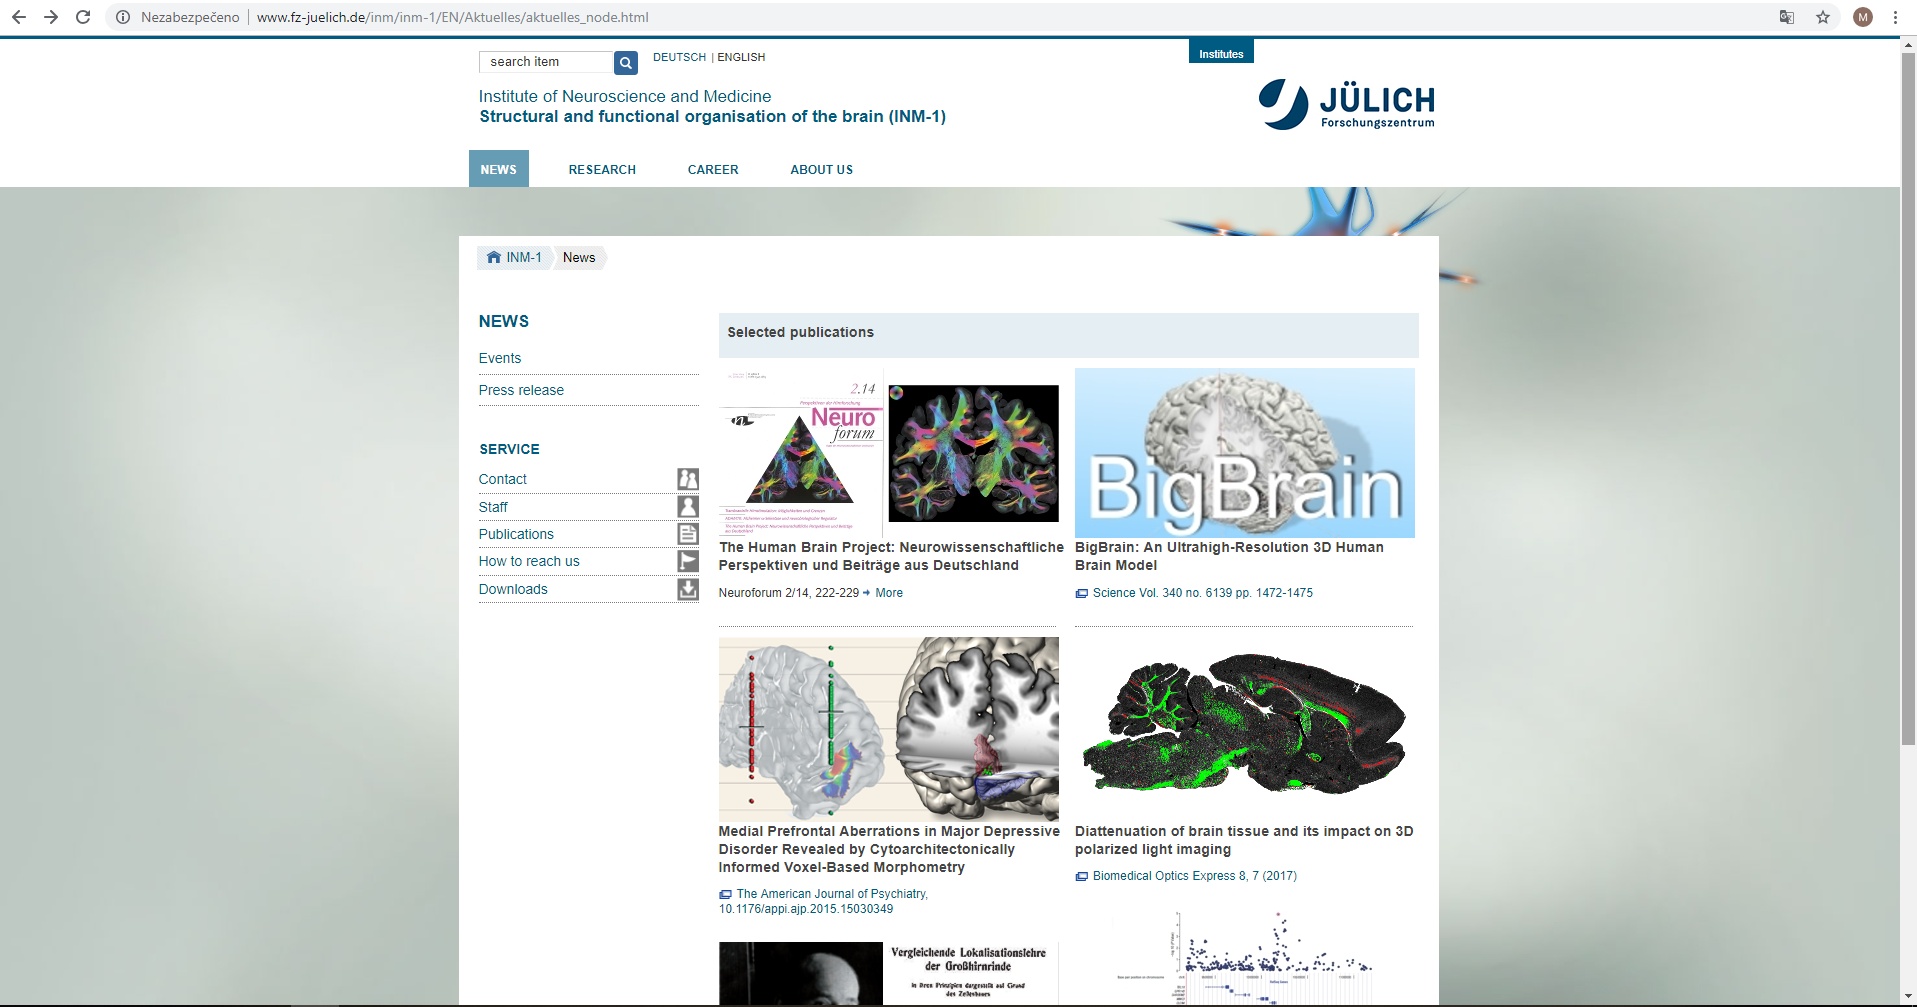 Webově stránky http://www.fz-juelich.de/inm/inm-1/EN/Aktuelles/aktuelles_node.html uvádějí veškeré novinky, které se s atlasem mozku spojují.